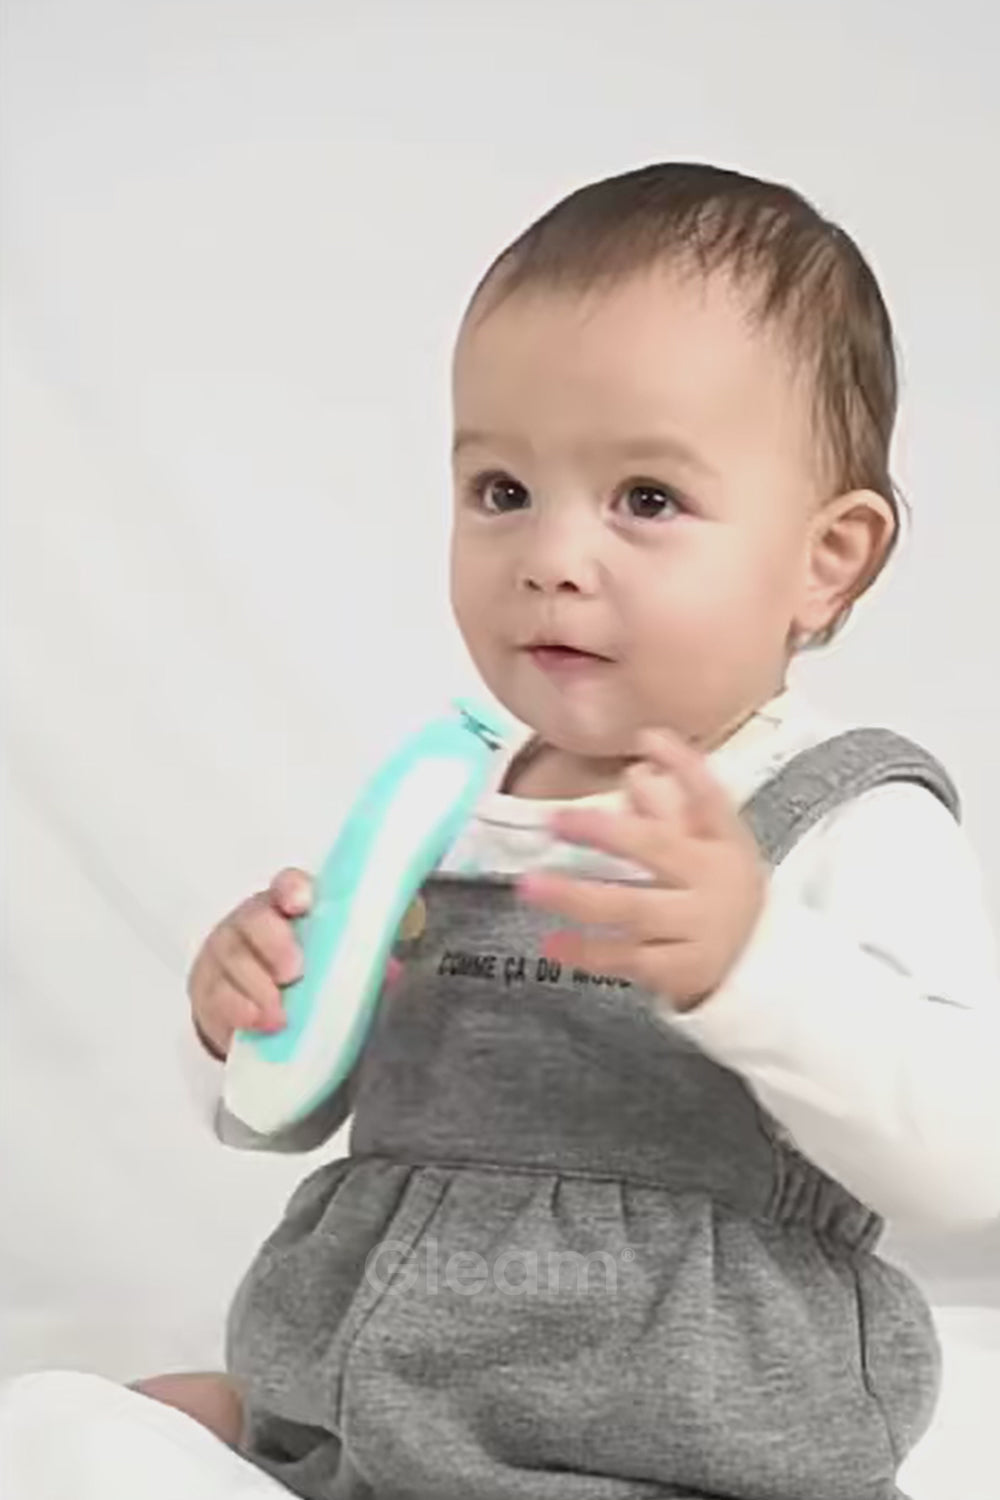 Coupe Ongles - Lime Électrique pour bébé